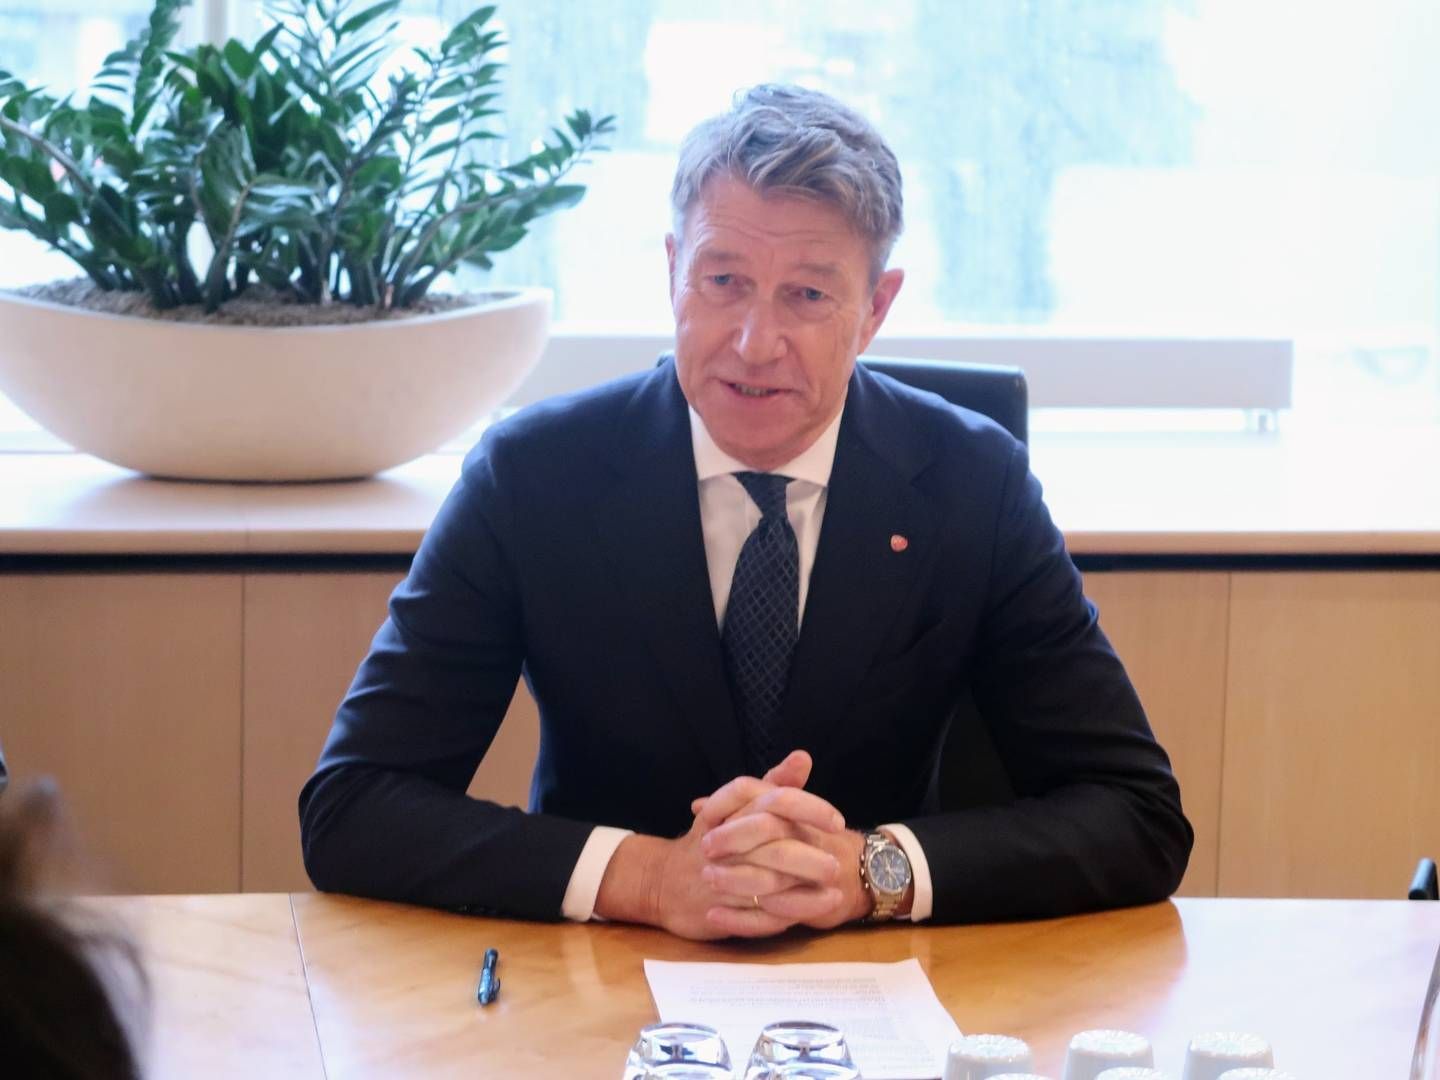 SNART PASSERT TO ÅR: Terje Aasland har vært energiminister siden 7. mars 2022. | Foto: Anders Lie Brenna, EnergiWatch